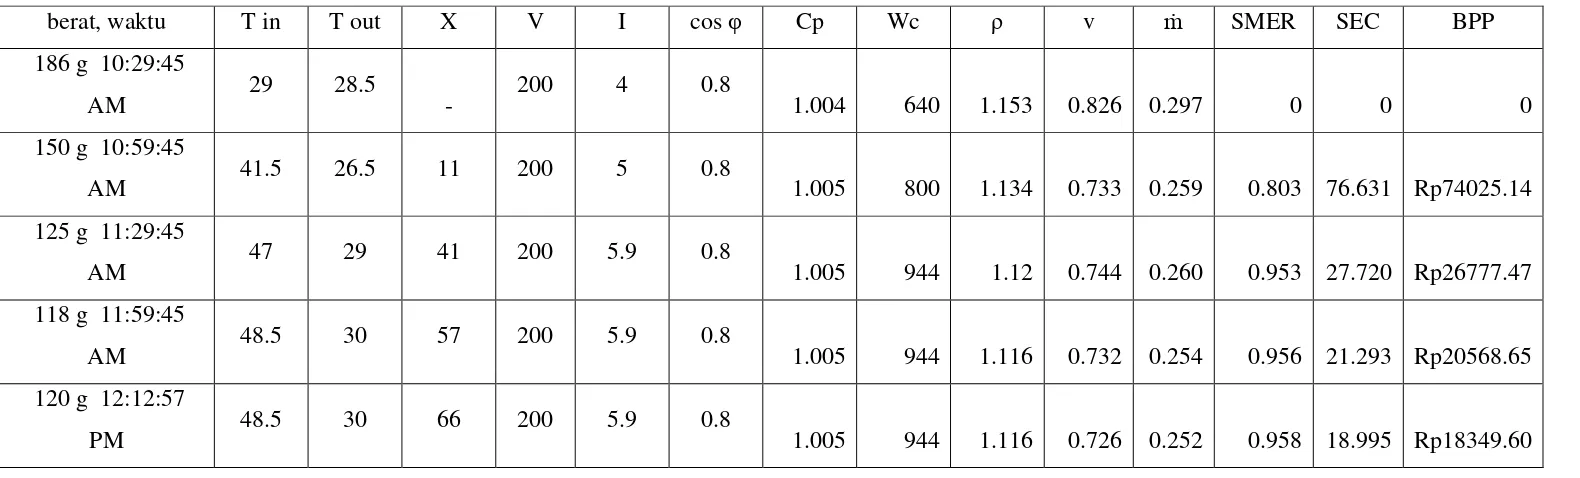 Tabel 4.1. Hasil Perhitungan untuk 1 pc kemeja, speed 1 